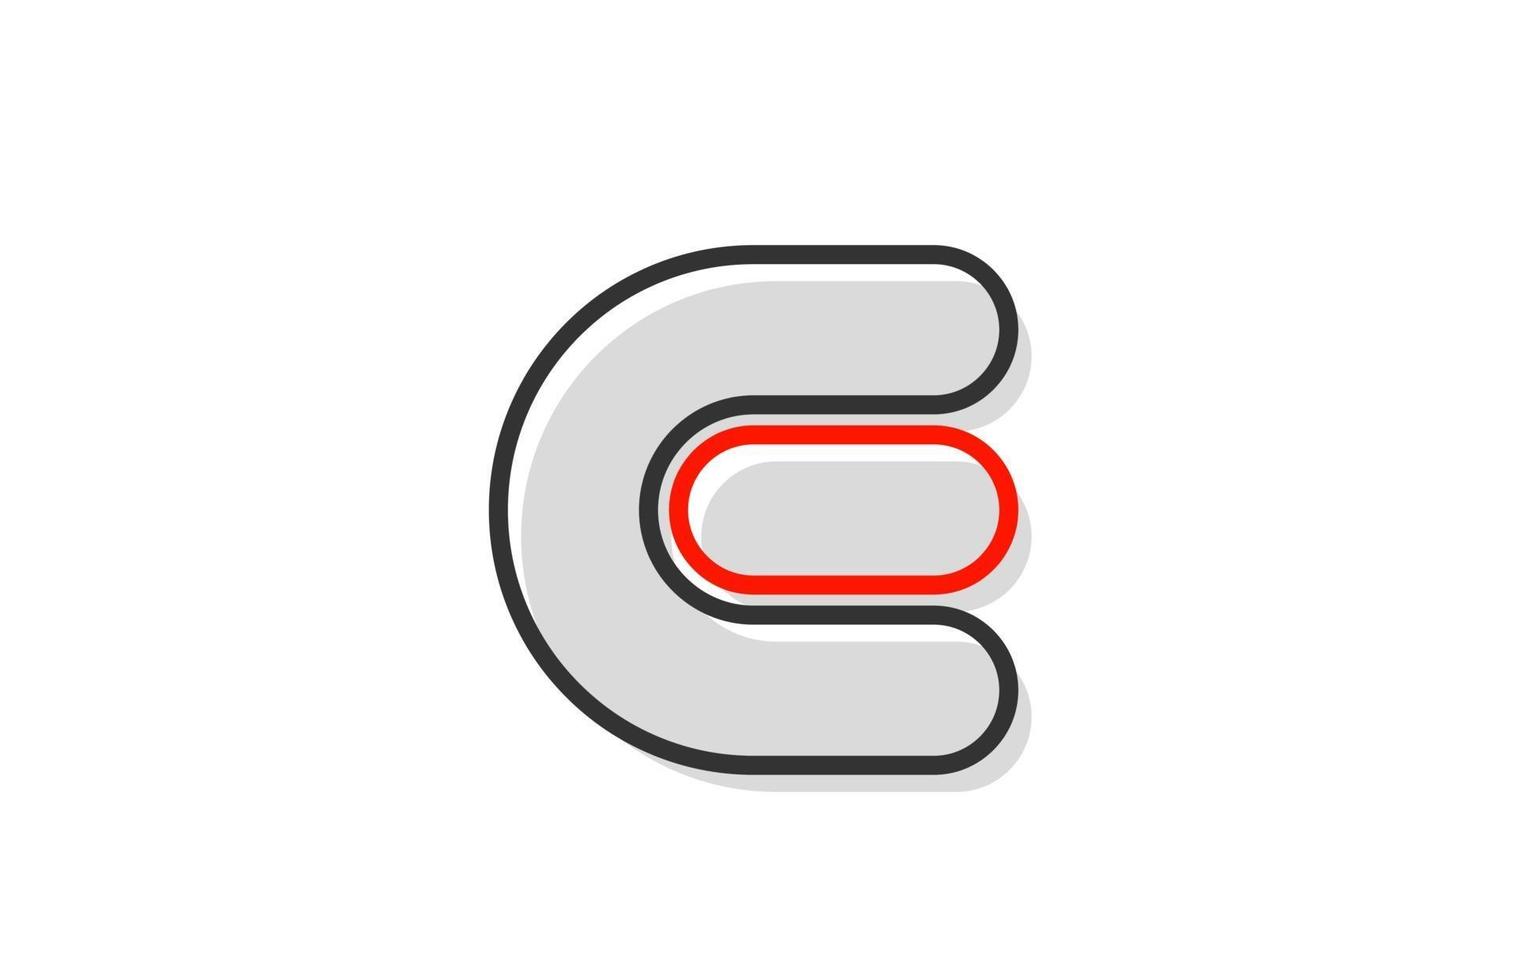 zwart rood grijs letter e alfabet logo ontwerp pictogram voor bedrijf vector